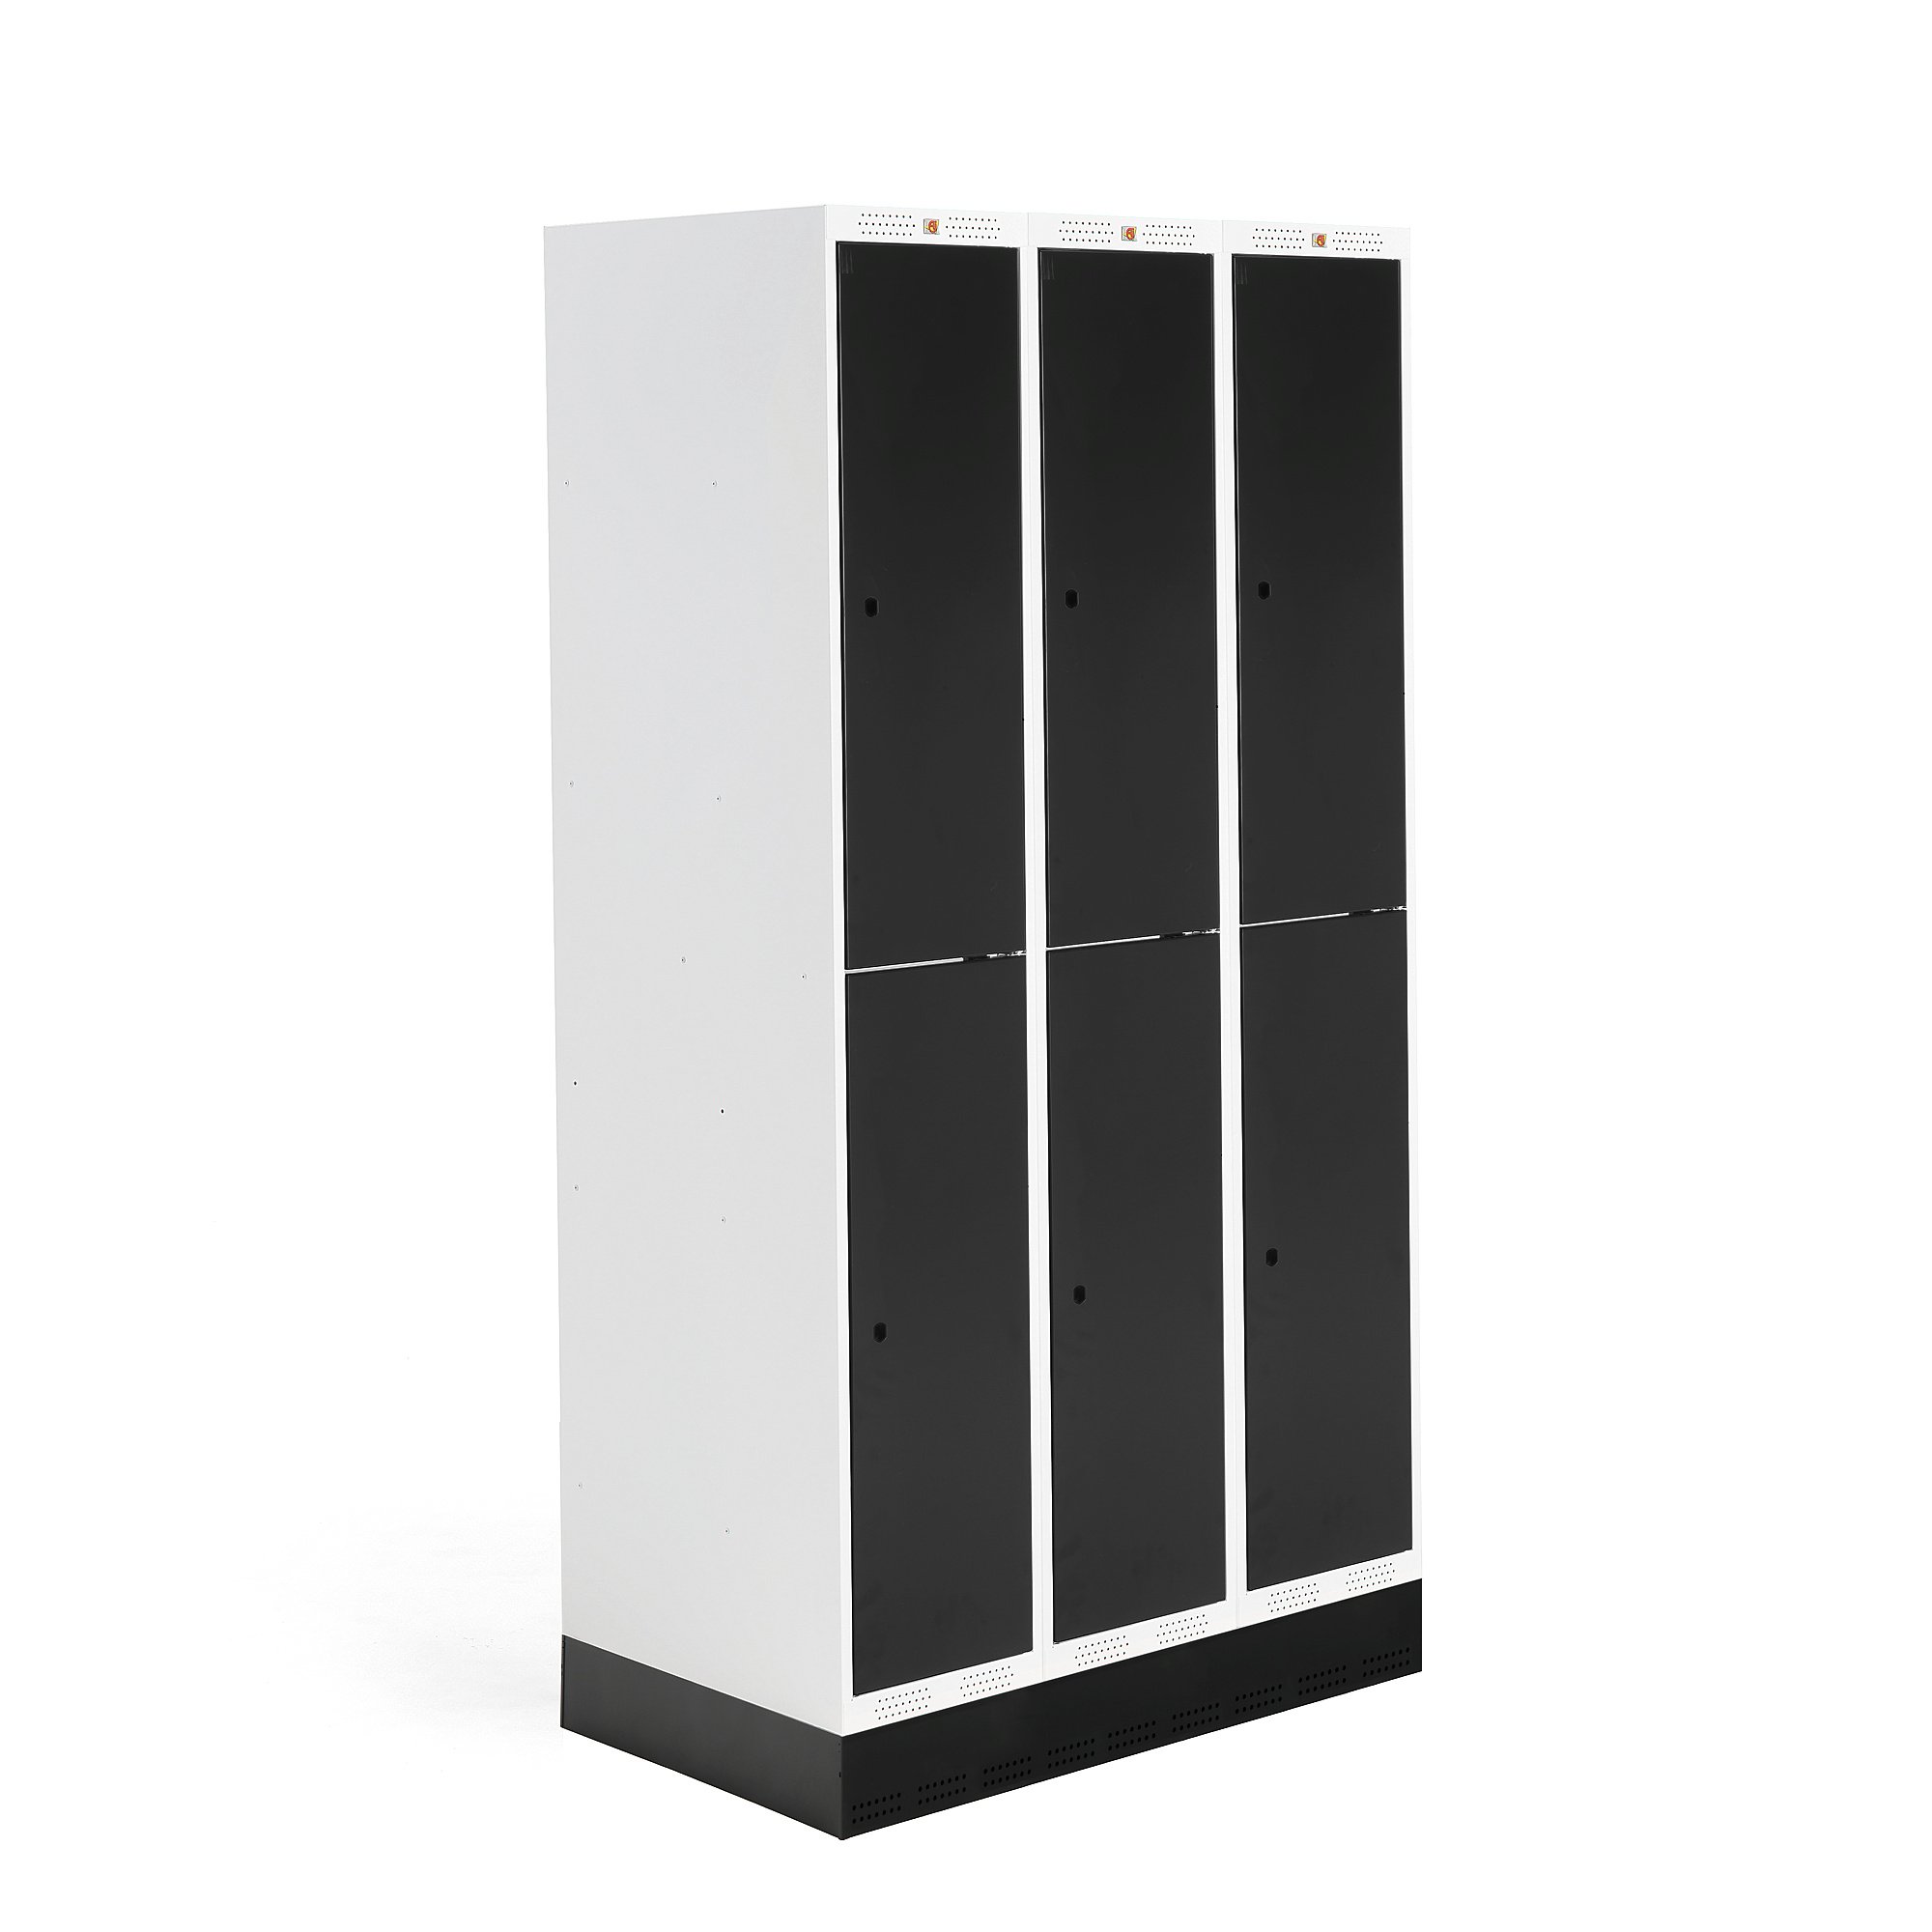 E-shop Školská šatňová skrinka ROZ, 3 sekcie, 6 dverí, 1890x900x550 mm, čierna, so soklom